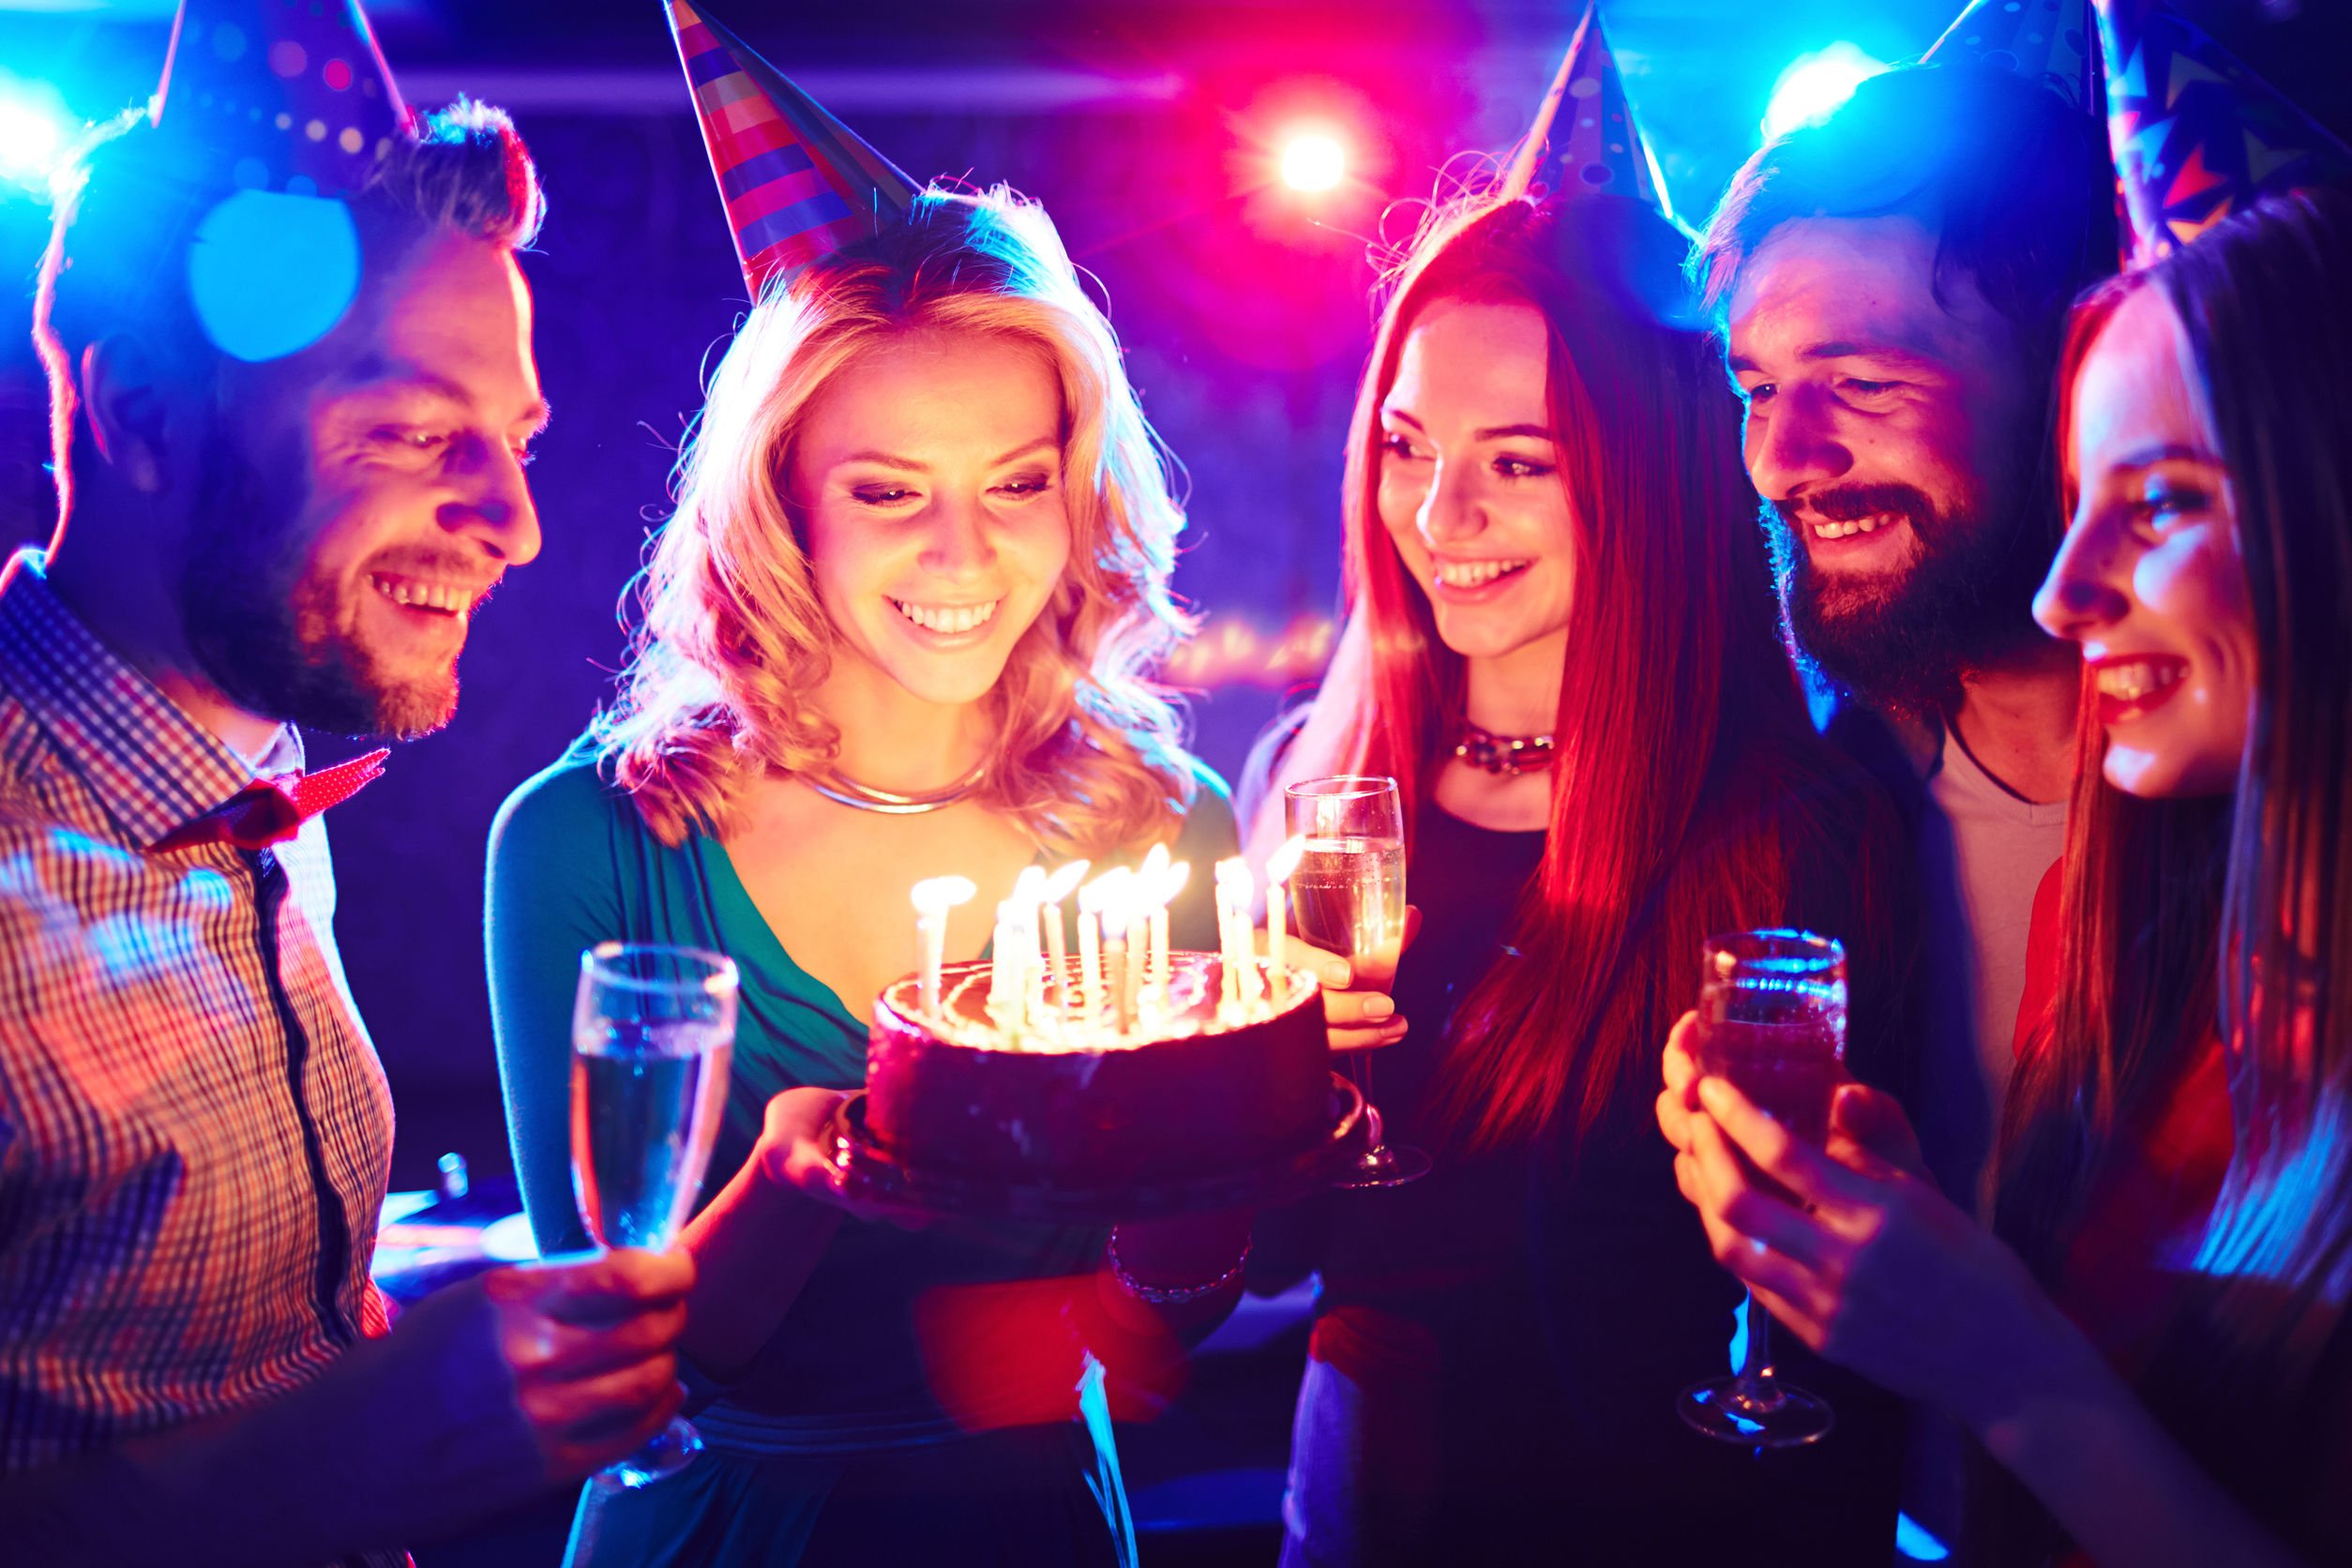 Pessoas comemorando aniversário ao redor de um bolo com velas acesas